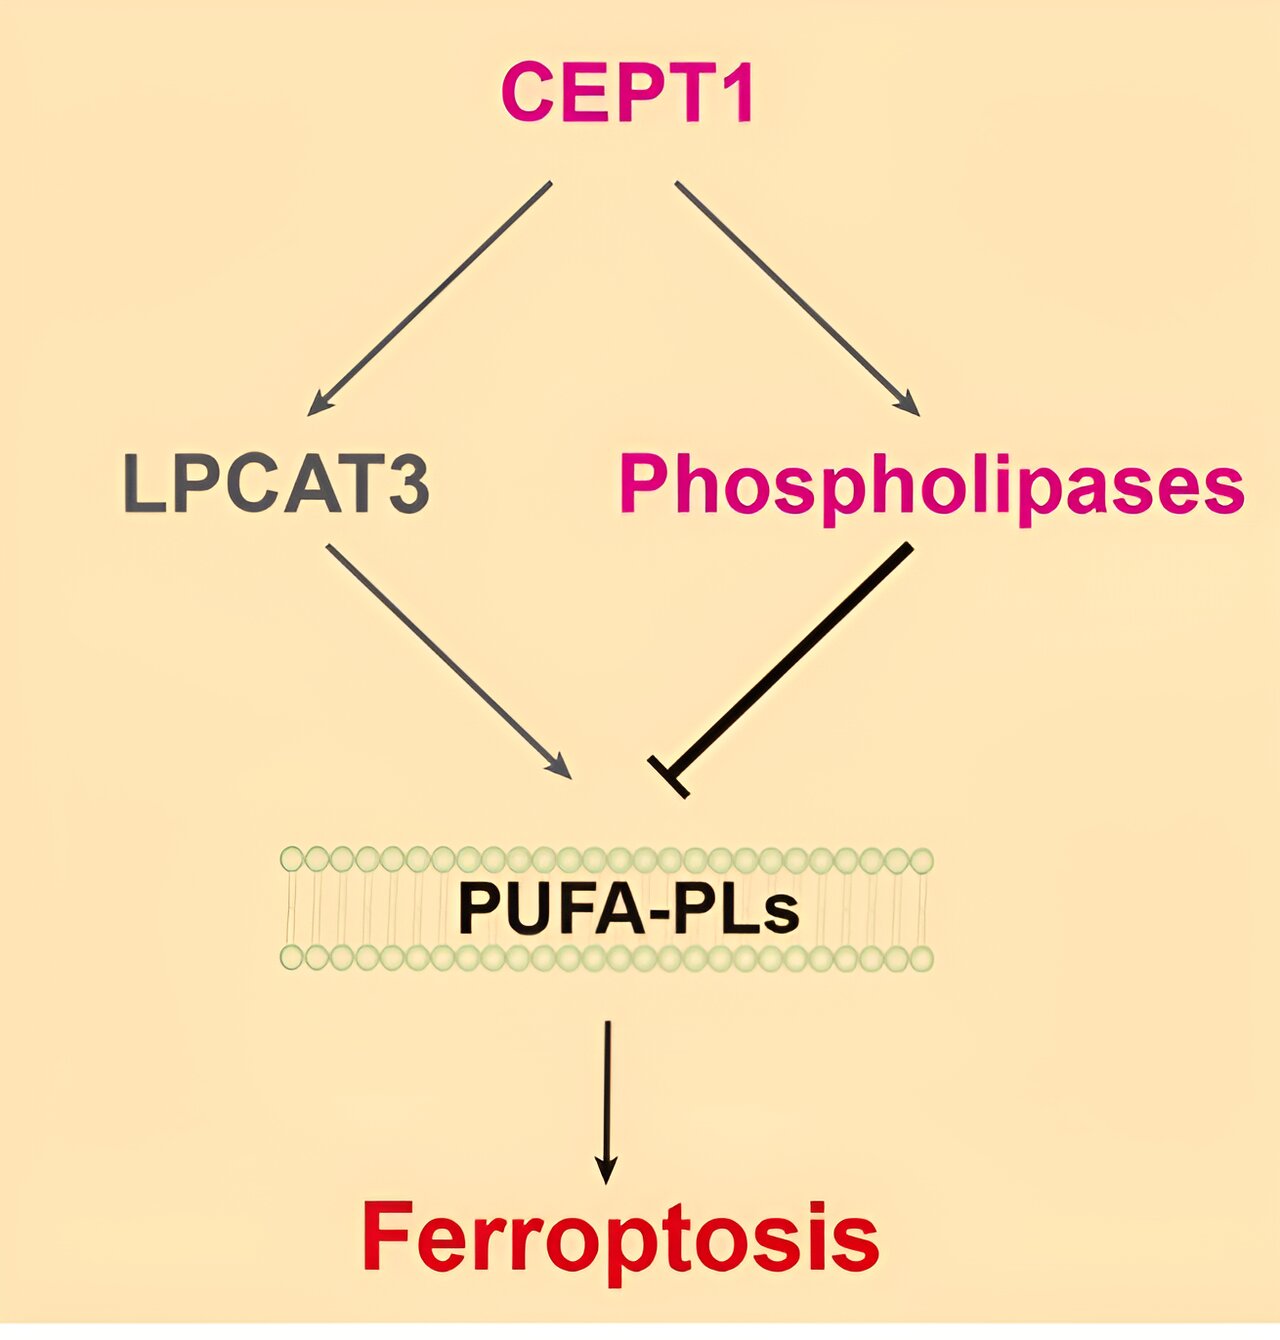 Badanie ujawnia nierozpoznaną wcześniej rolę CEPT1 w hamowaniu ferroptozy